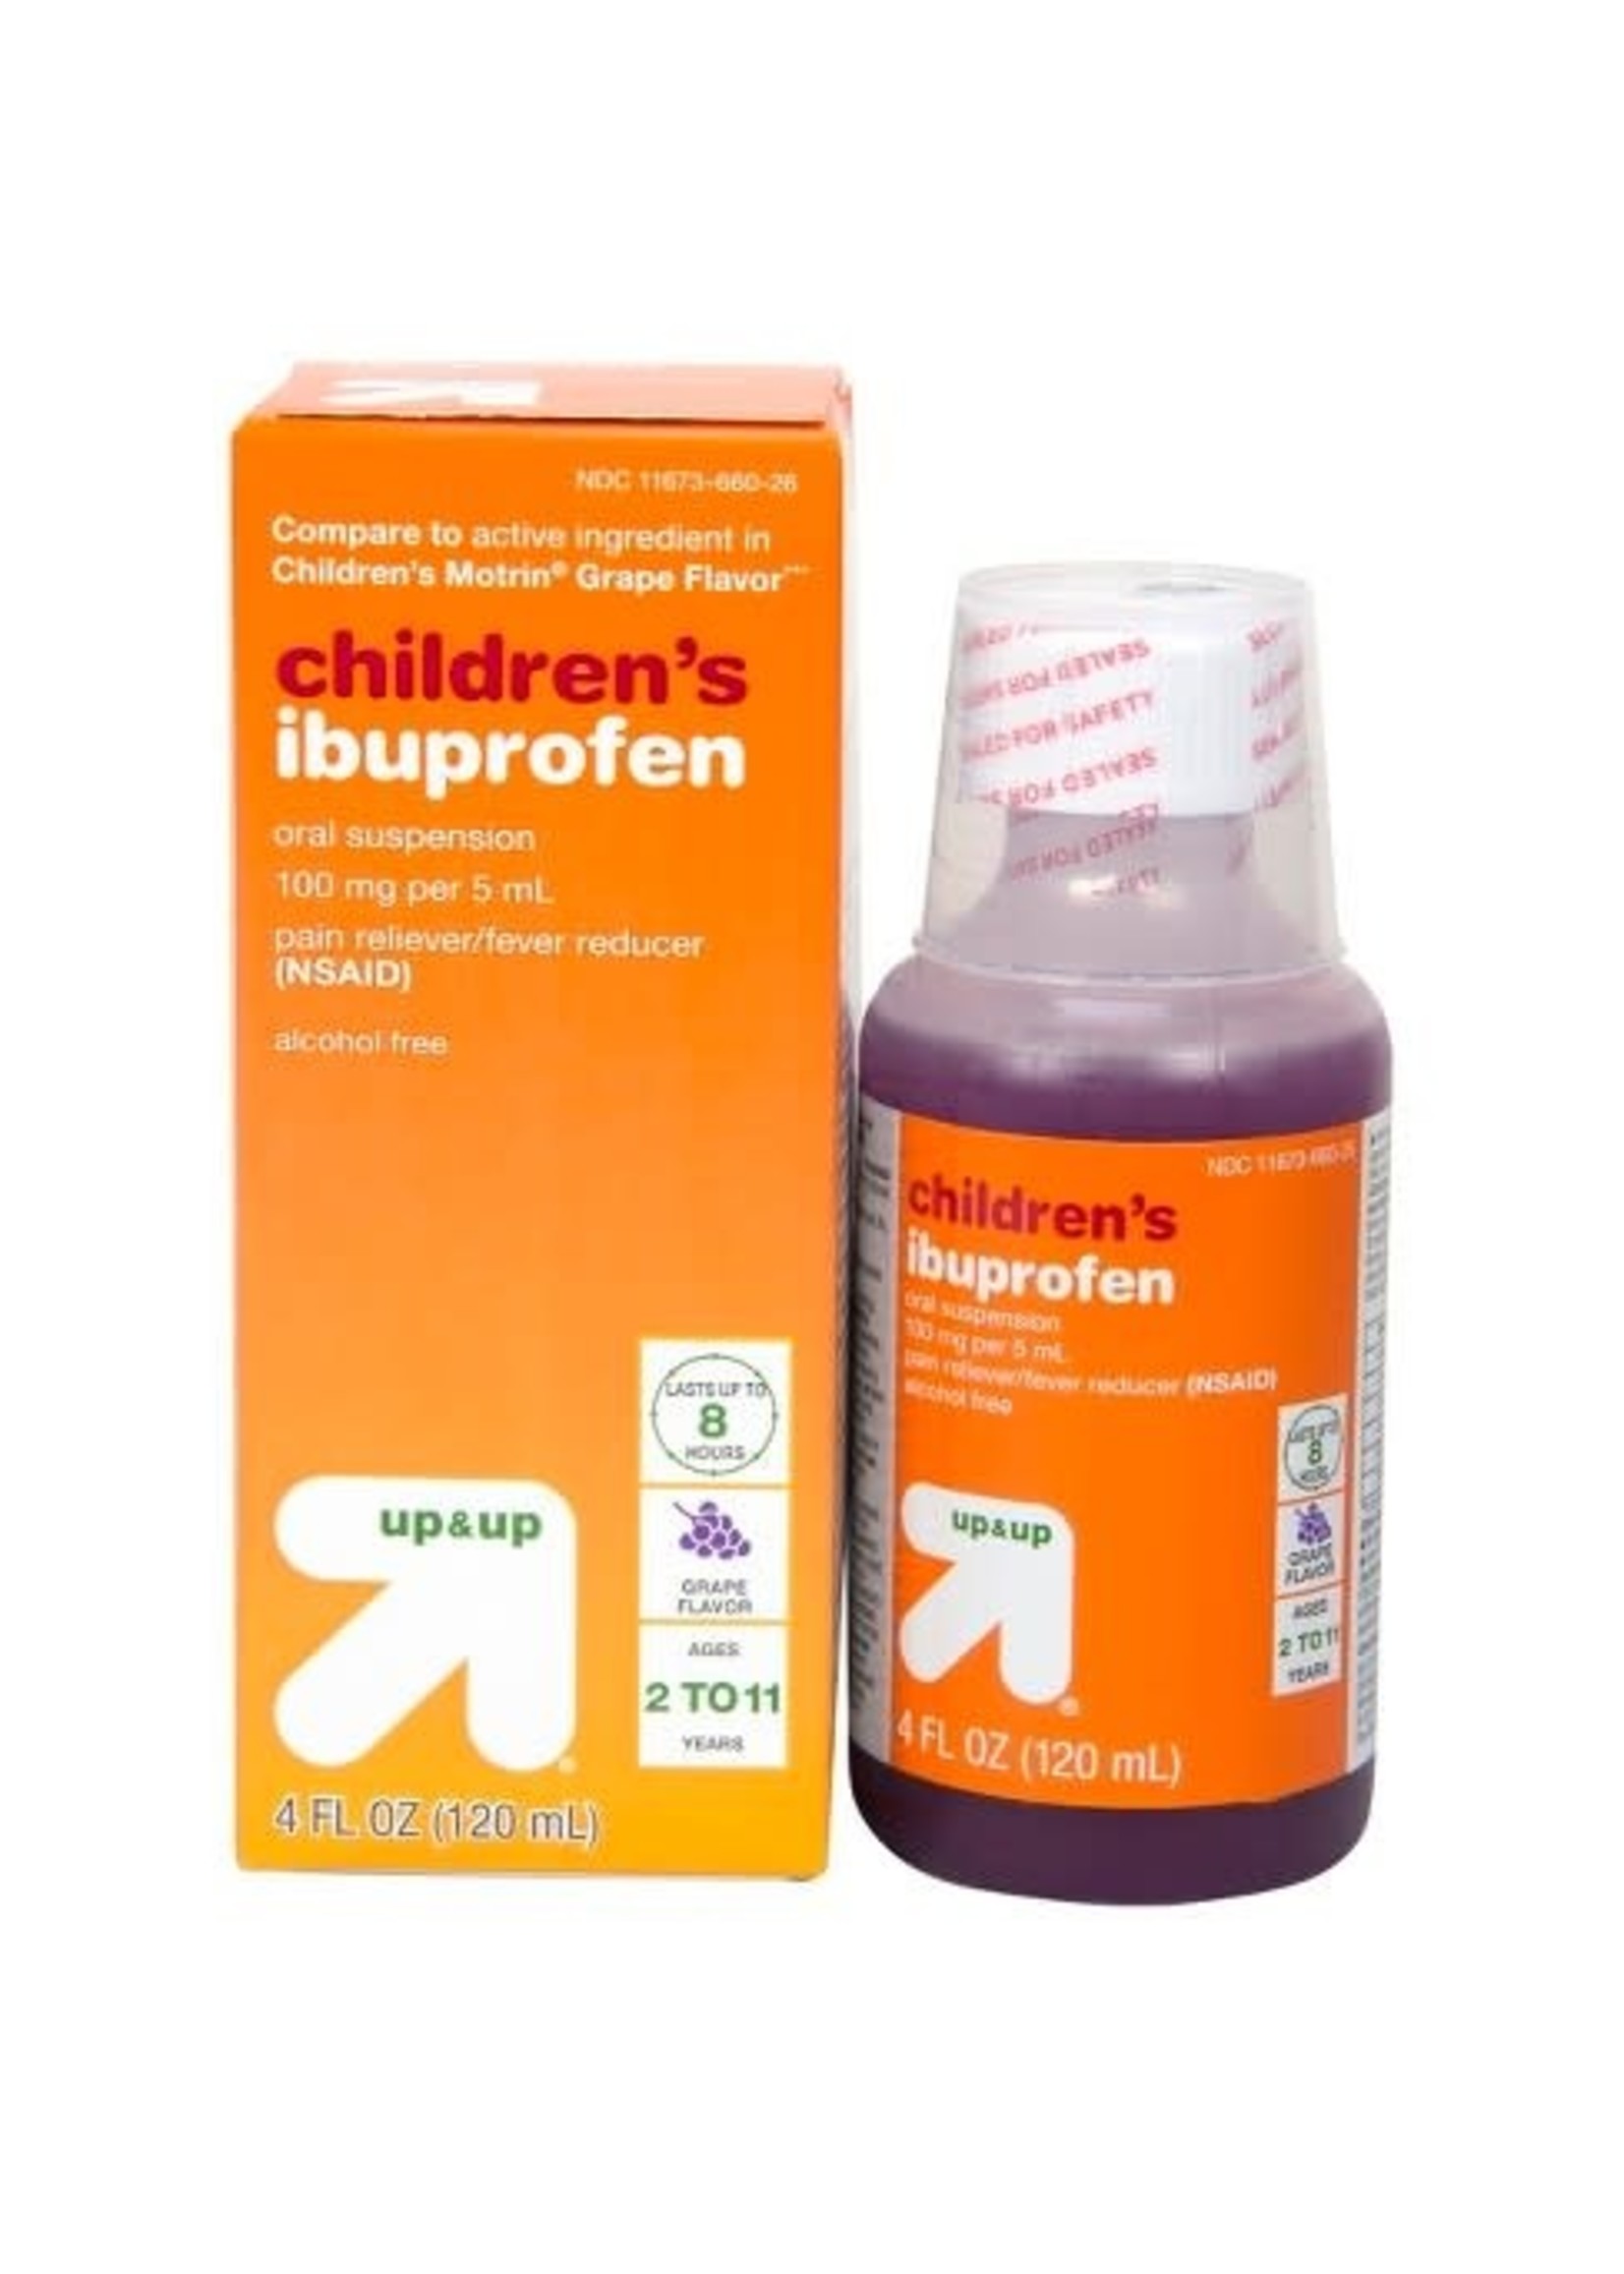 Children's Ibuprofen 4 fl oz (100mg/5mL)